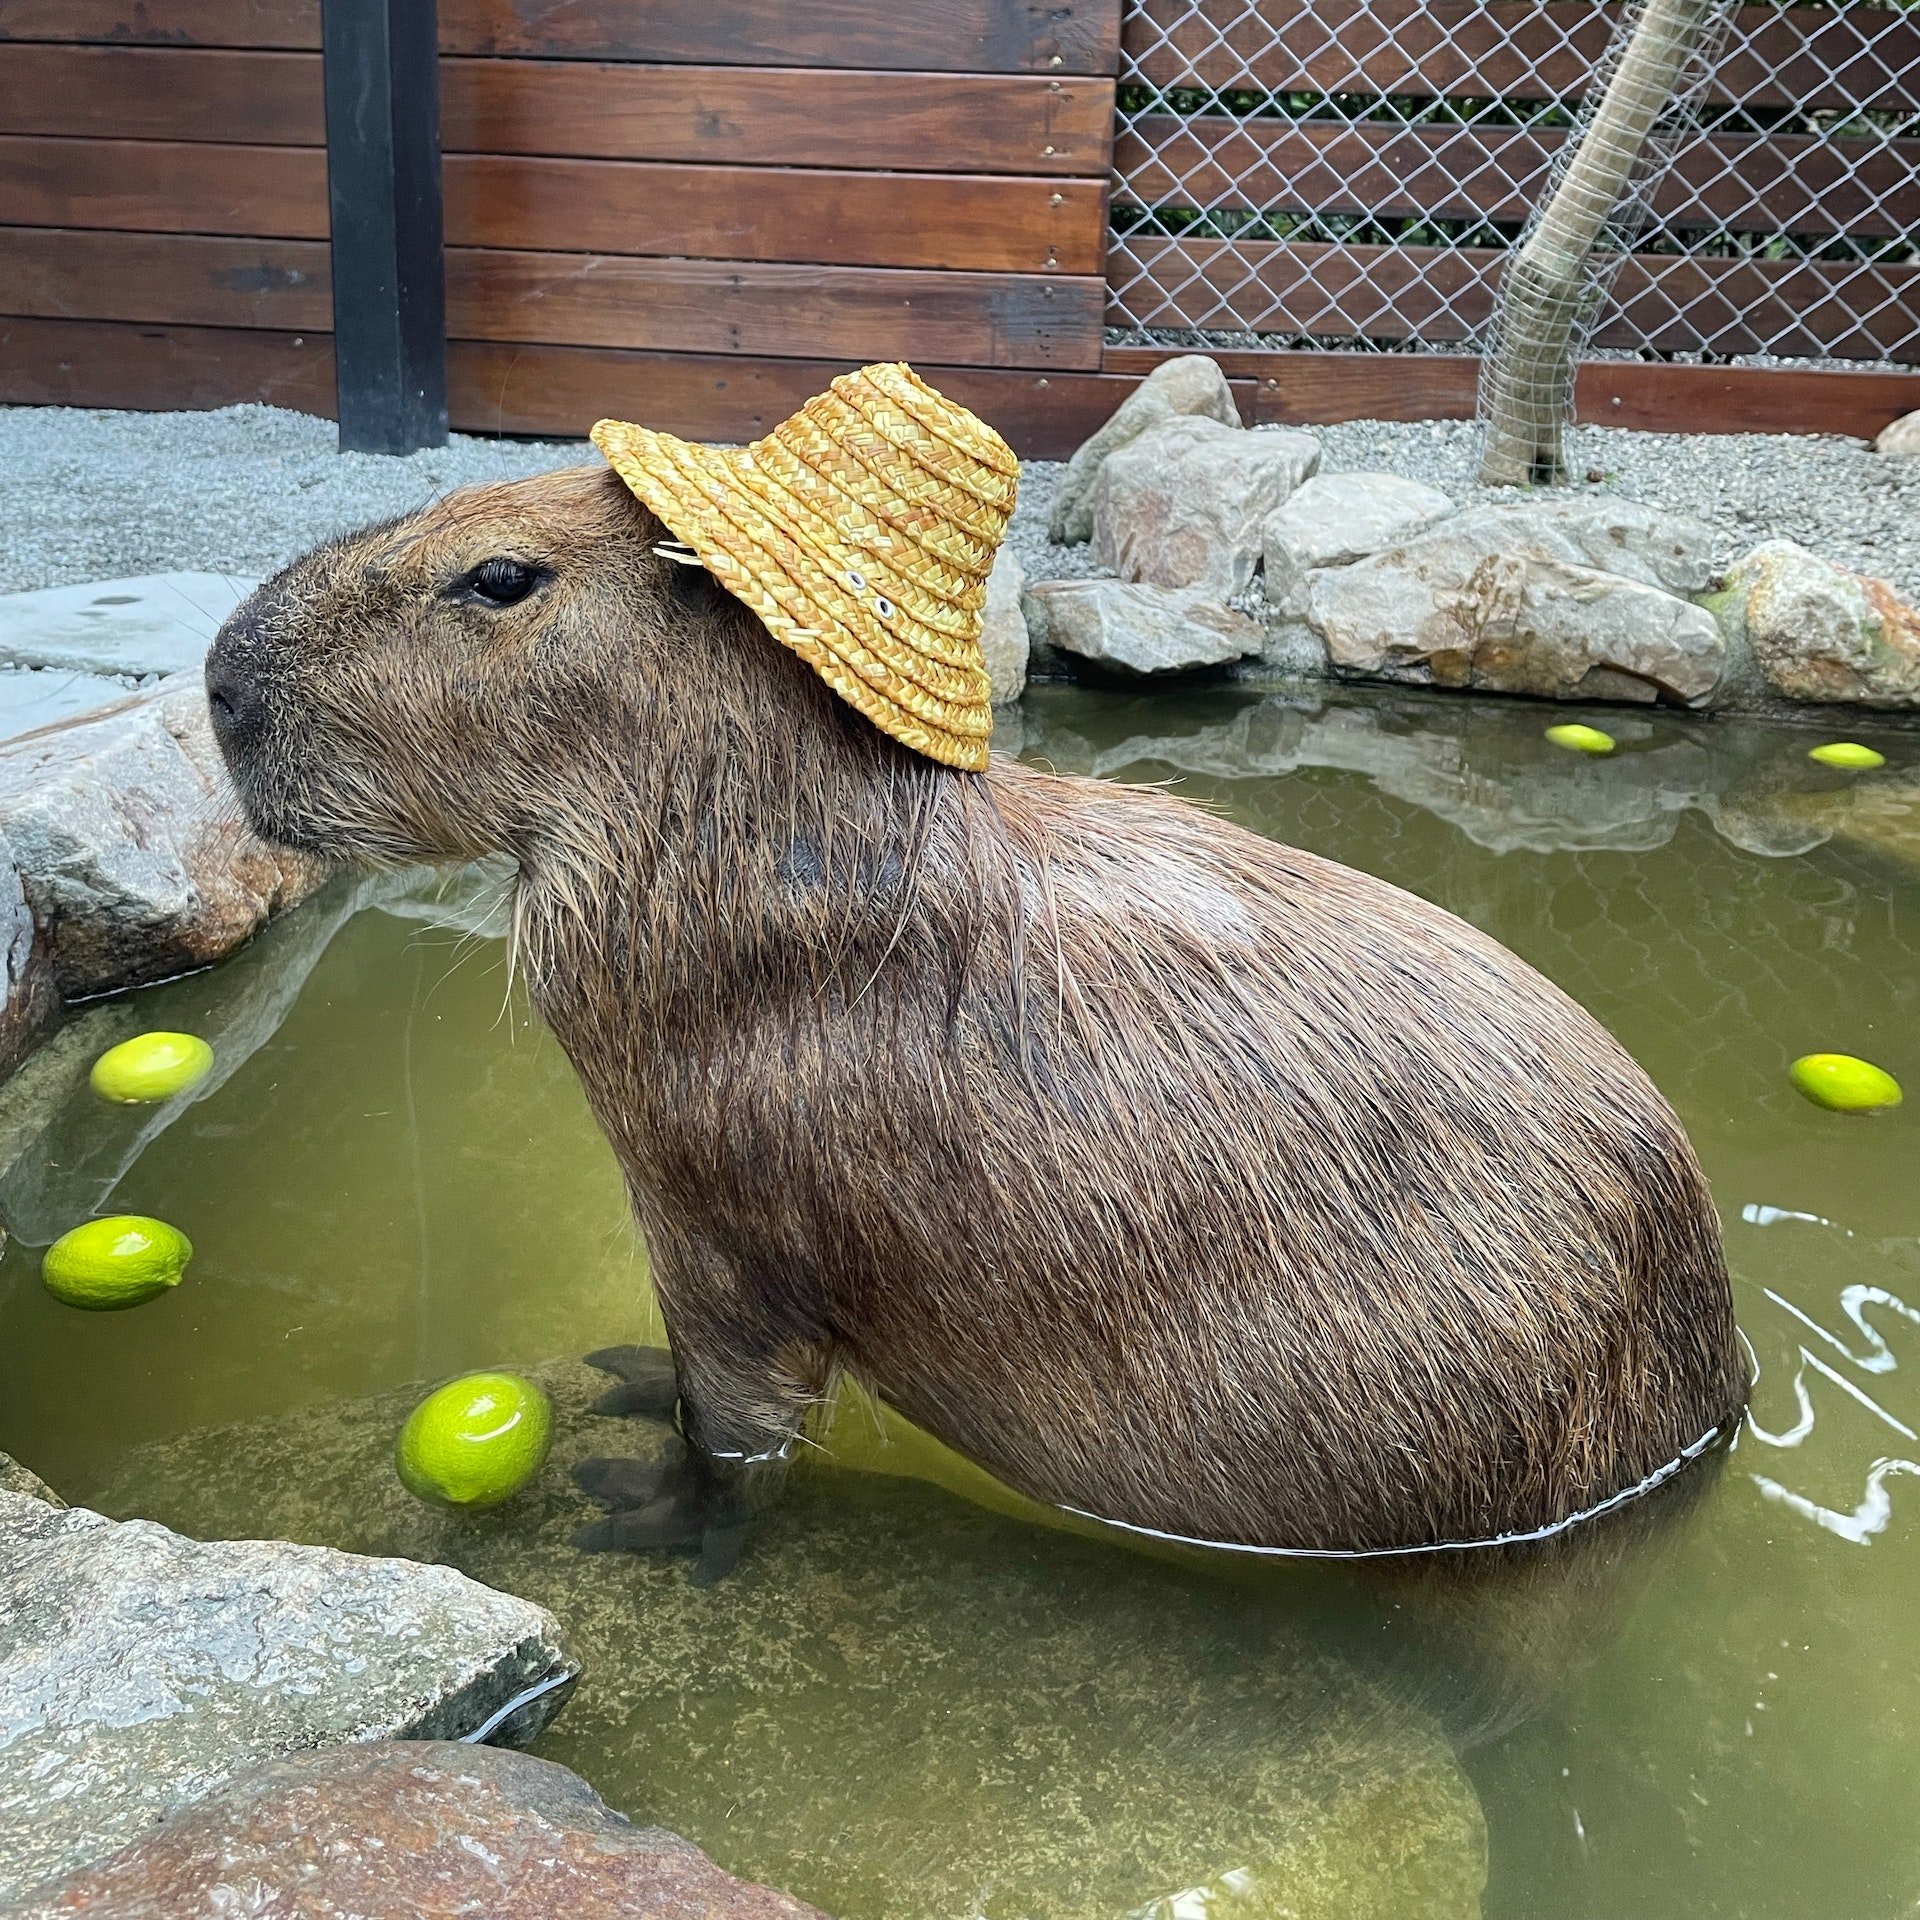 Spring rein Schrei Ruhm capybara patch Makadam Alternative Vergleich